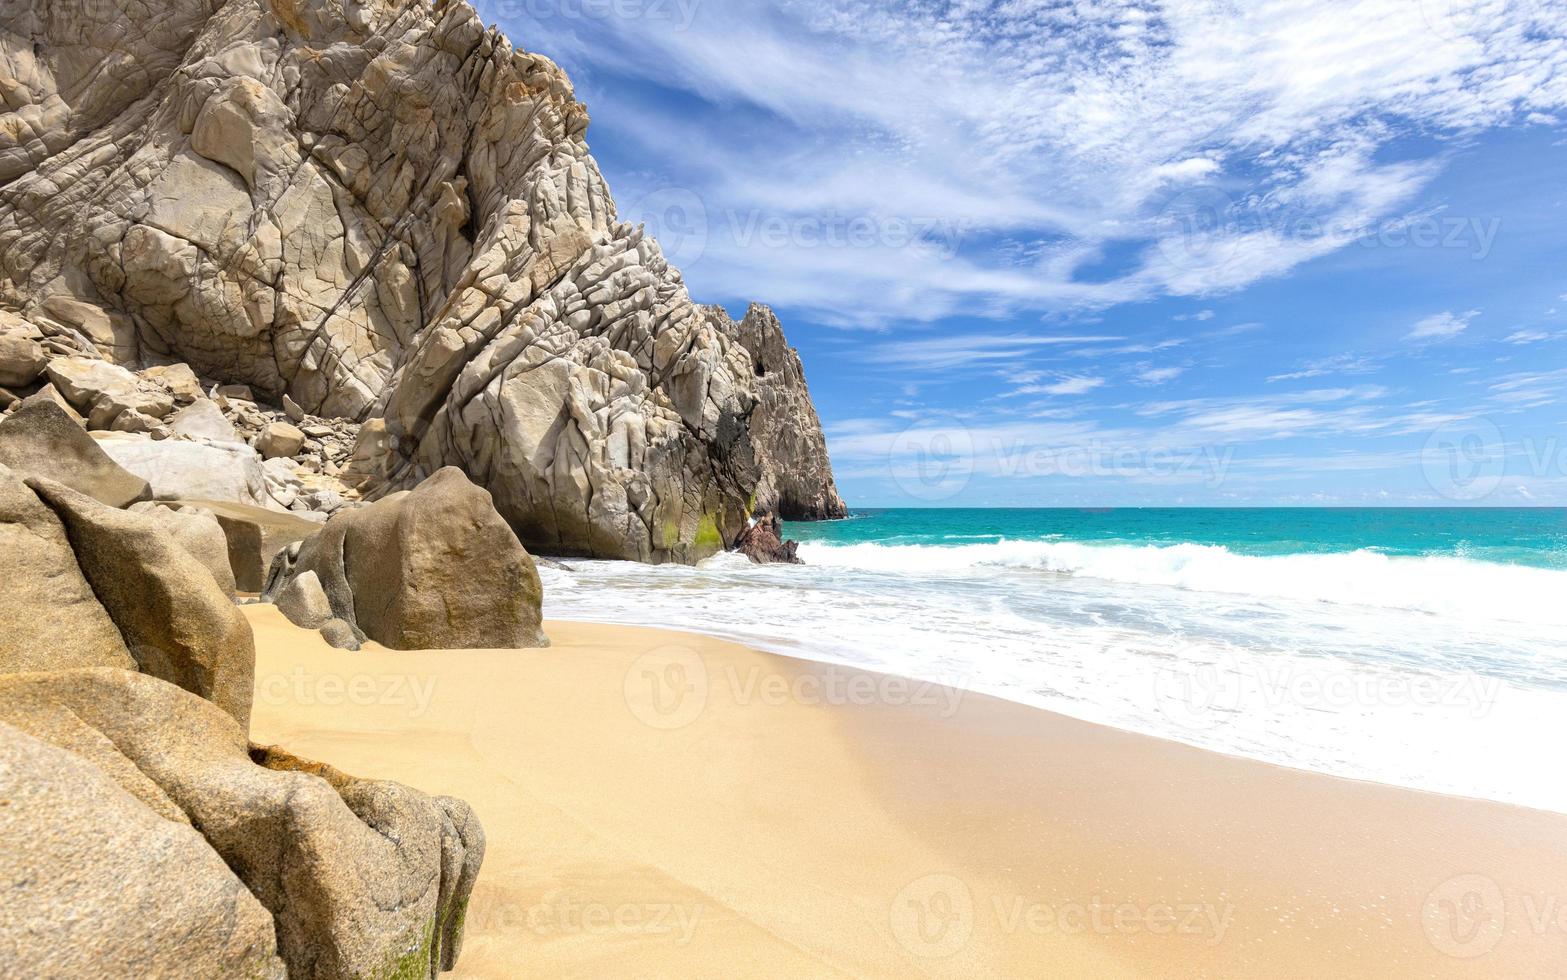 destination de voyage pittoresque playa del divorcio, plage de divorce située près de l'arche pittoresque de cabo san lucas photo